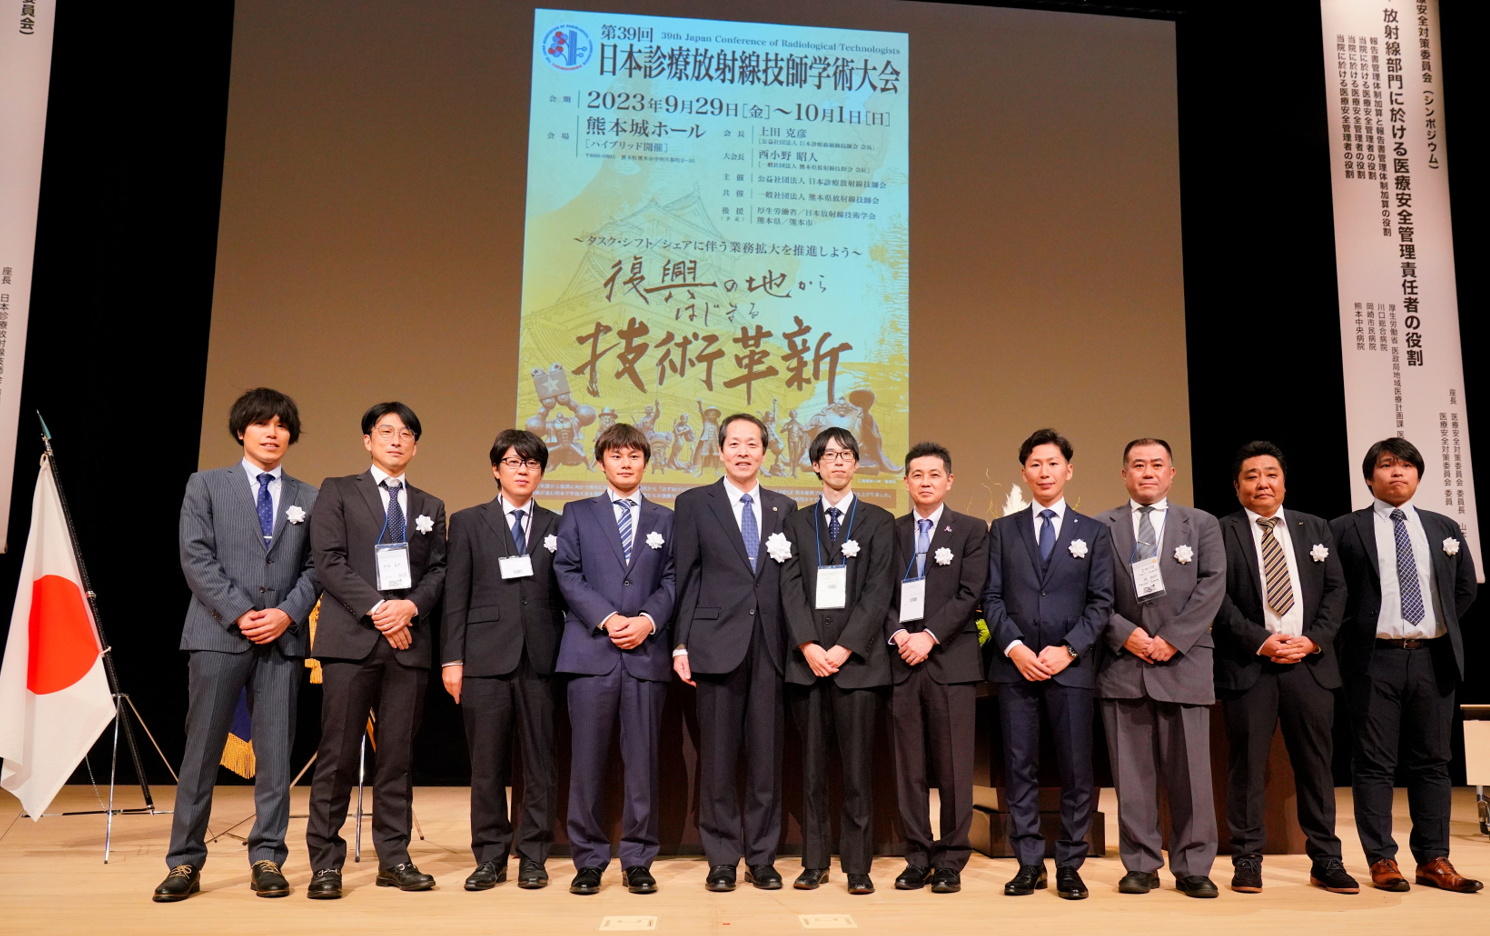 日本診療放射線技師会「学術奨励賞」表彰式